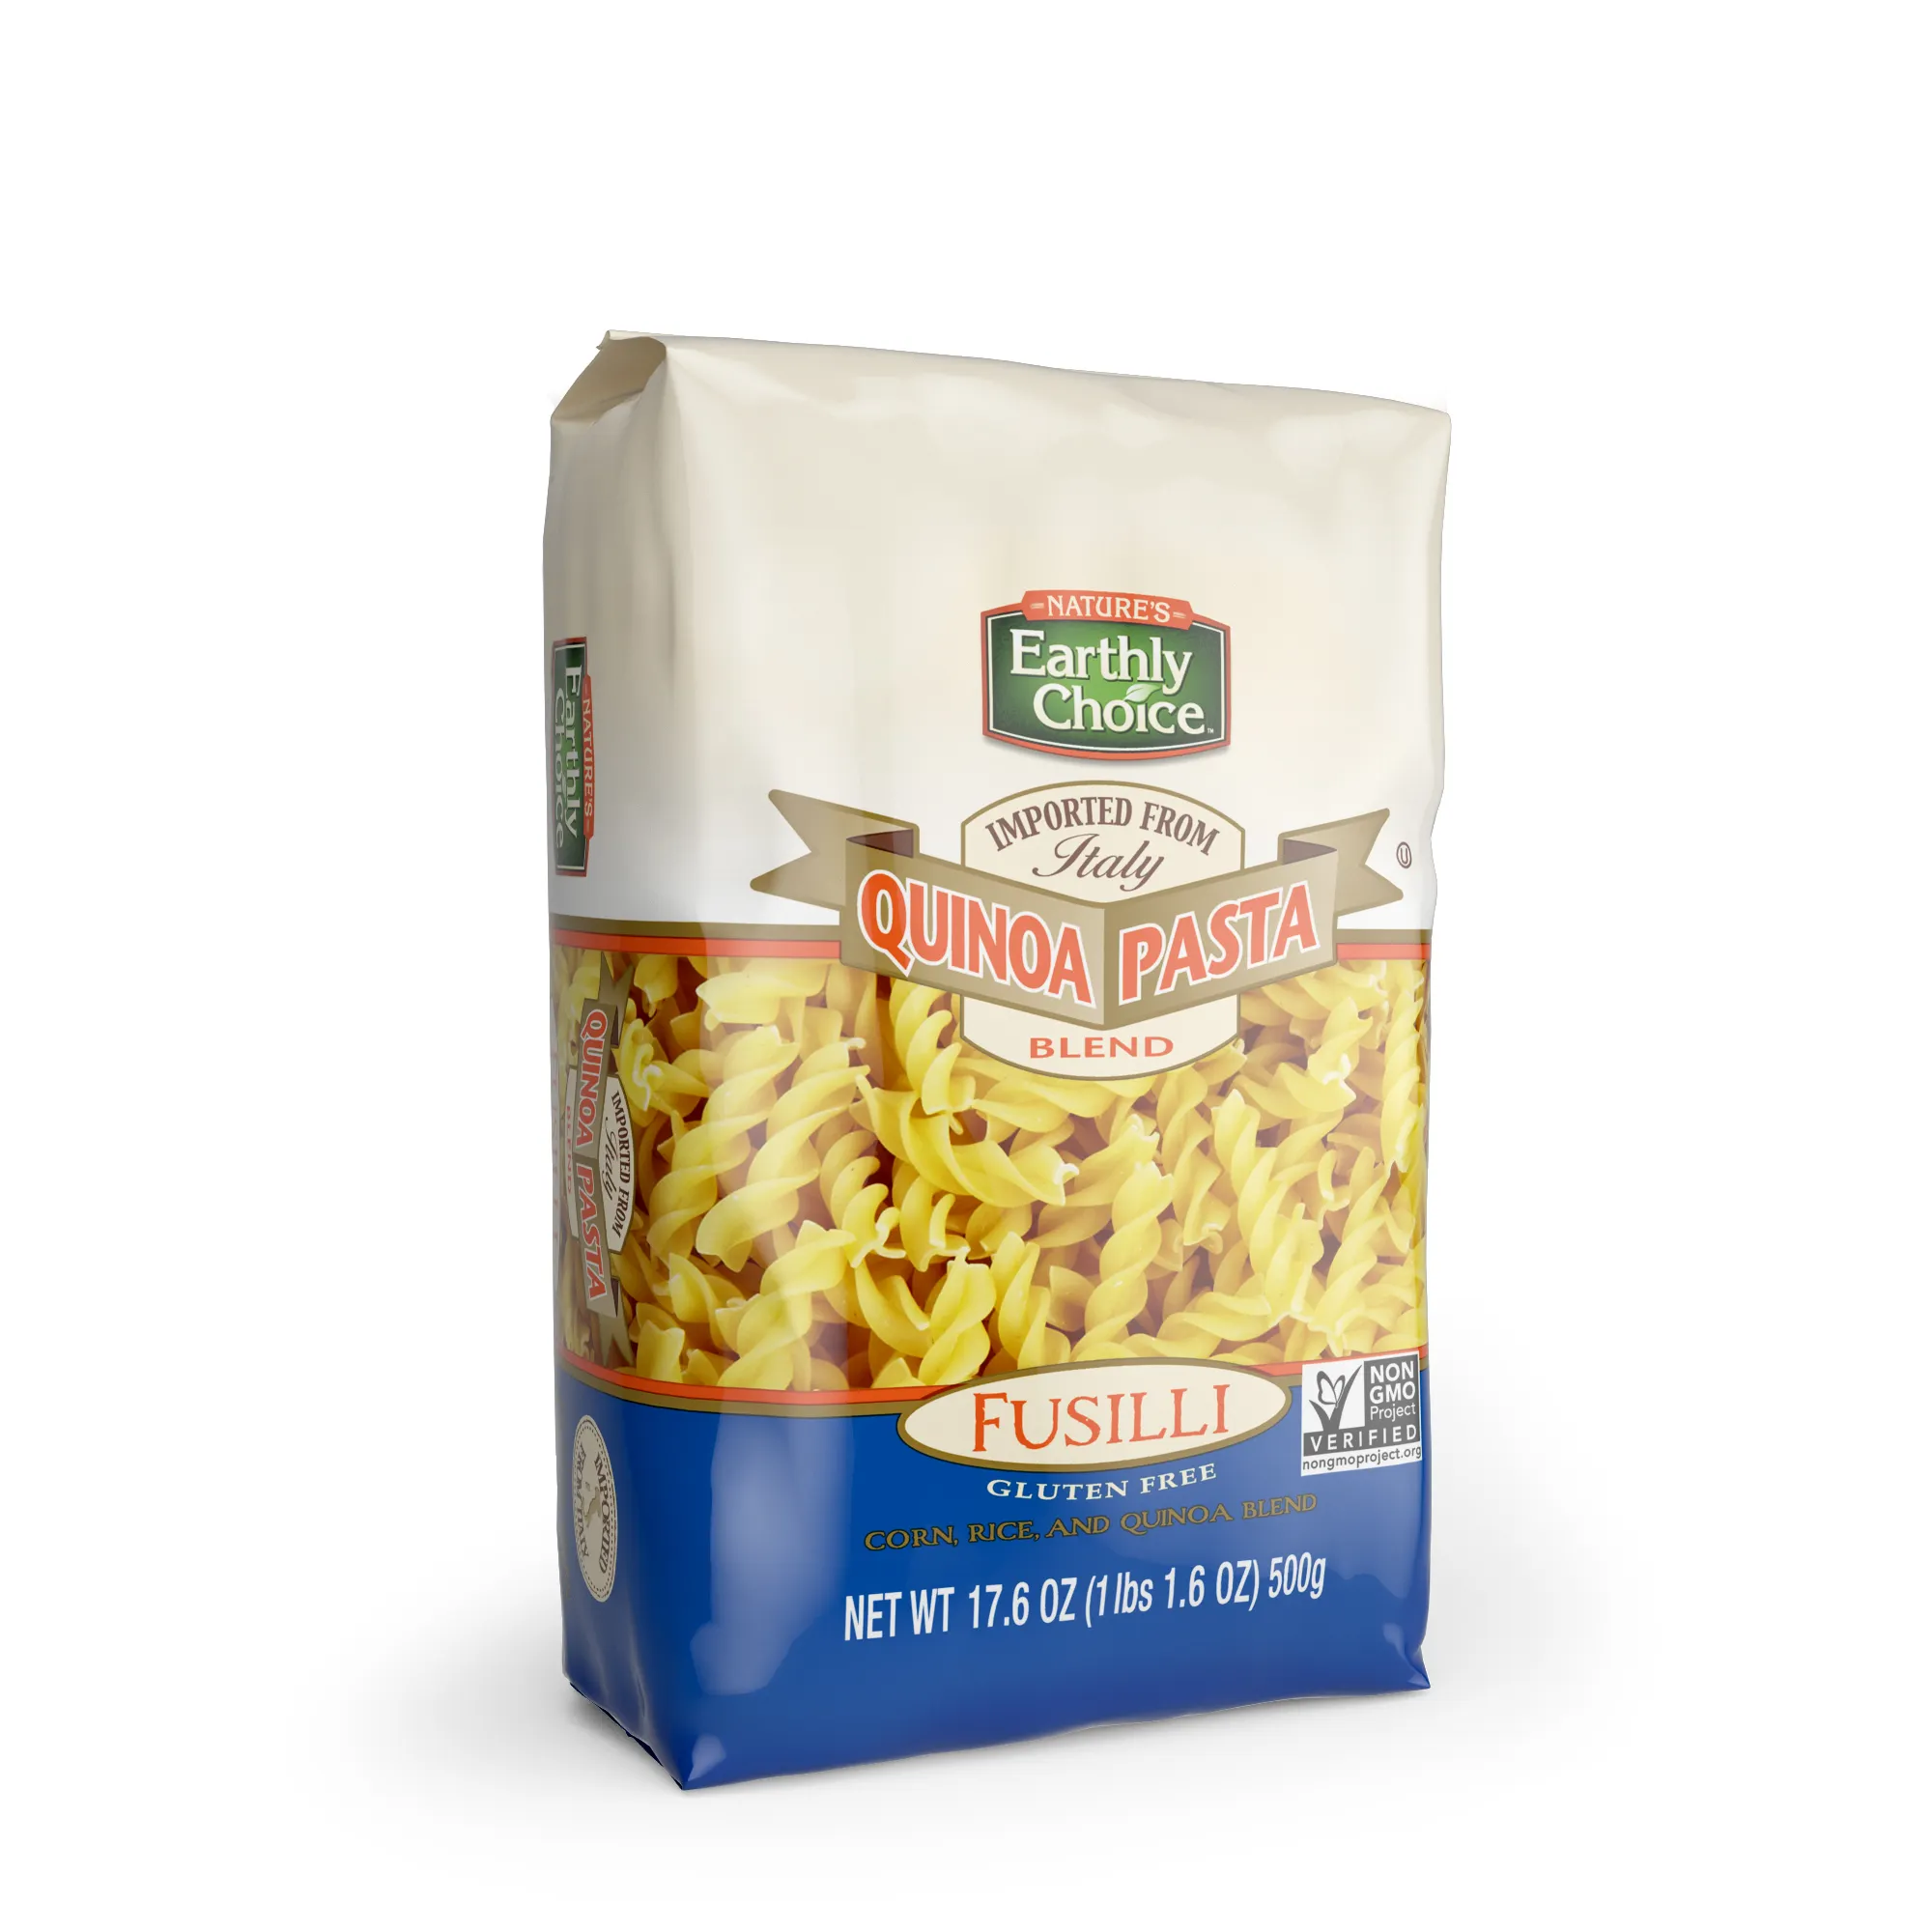 Производители исходят из природного выбора Quinoa, смесь макаронных изделий Fusilli pesca submarina fusilli от нас